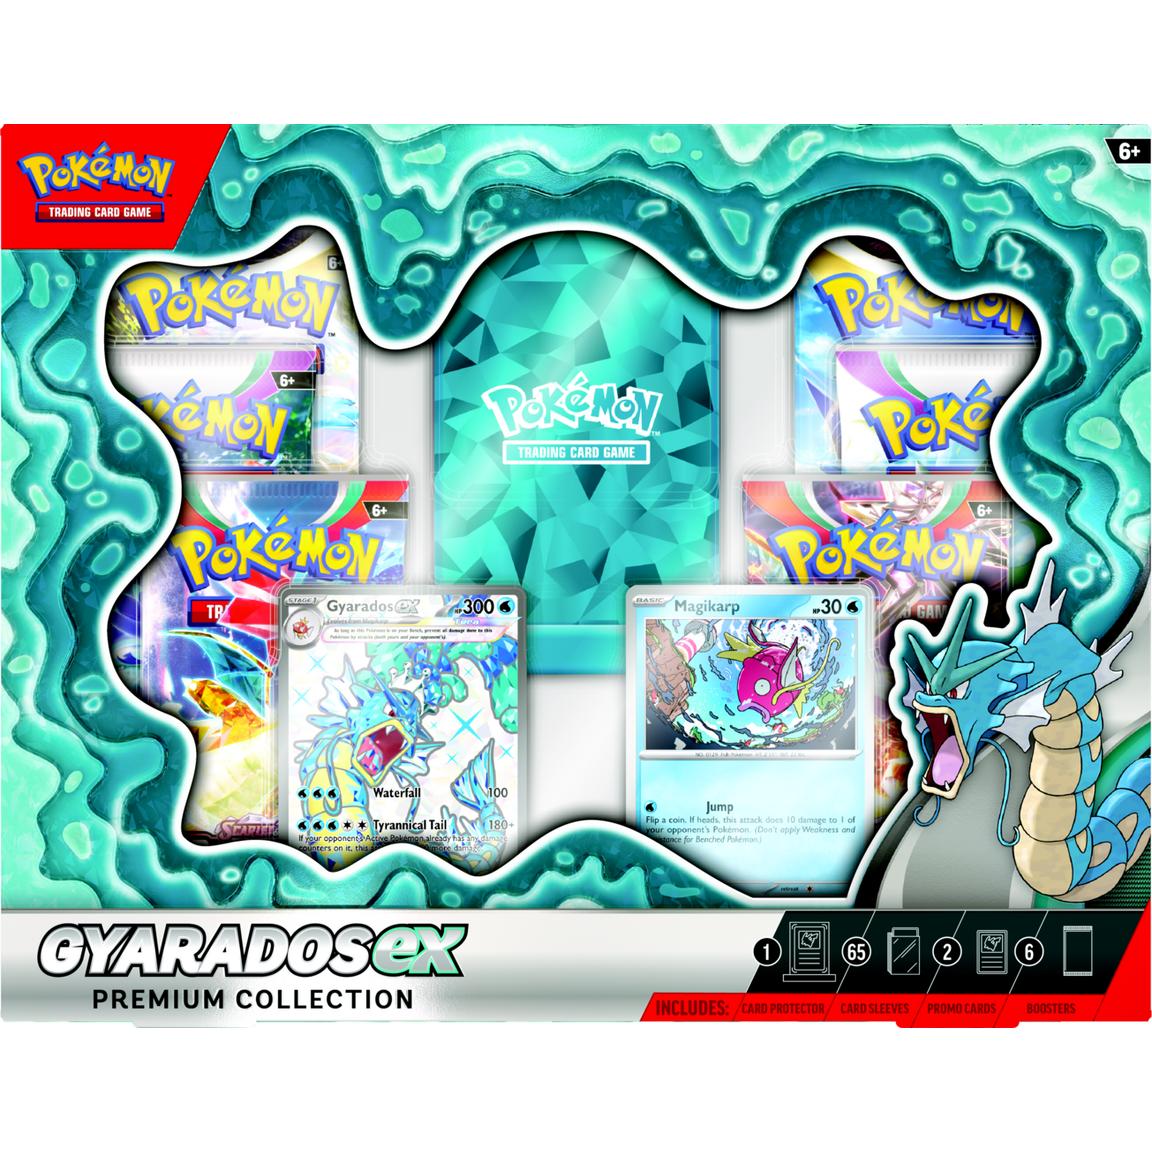 Pokemon Trading Card Game: Gyarados ex Premium Collection - GameStop Exclusive 24.99